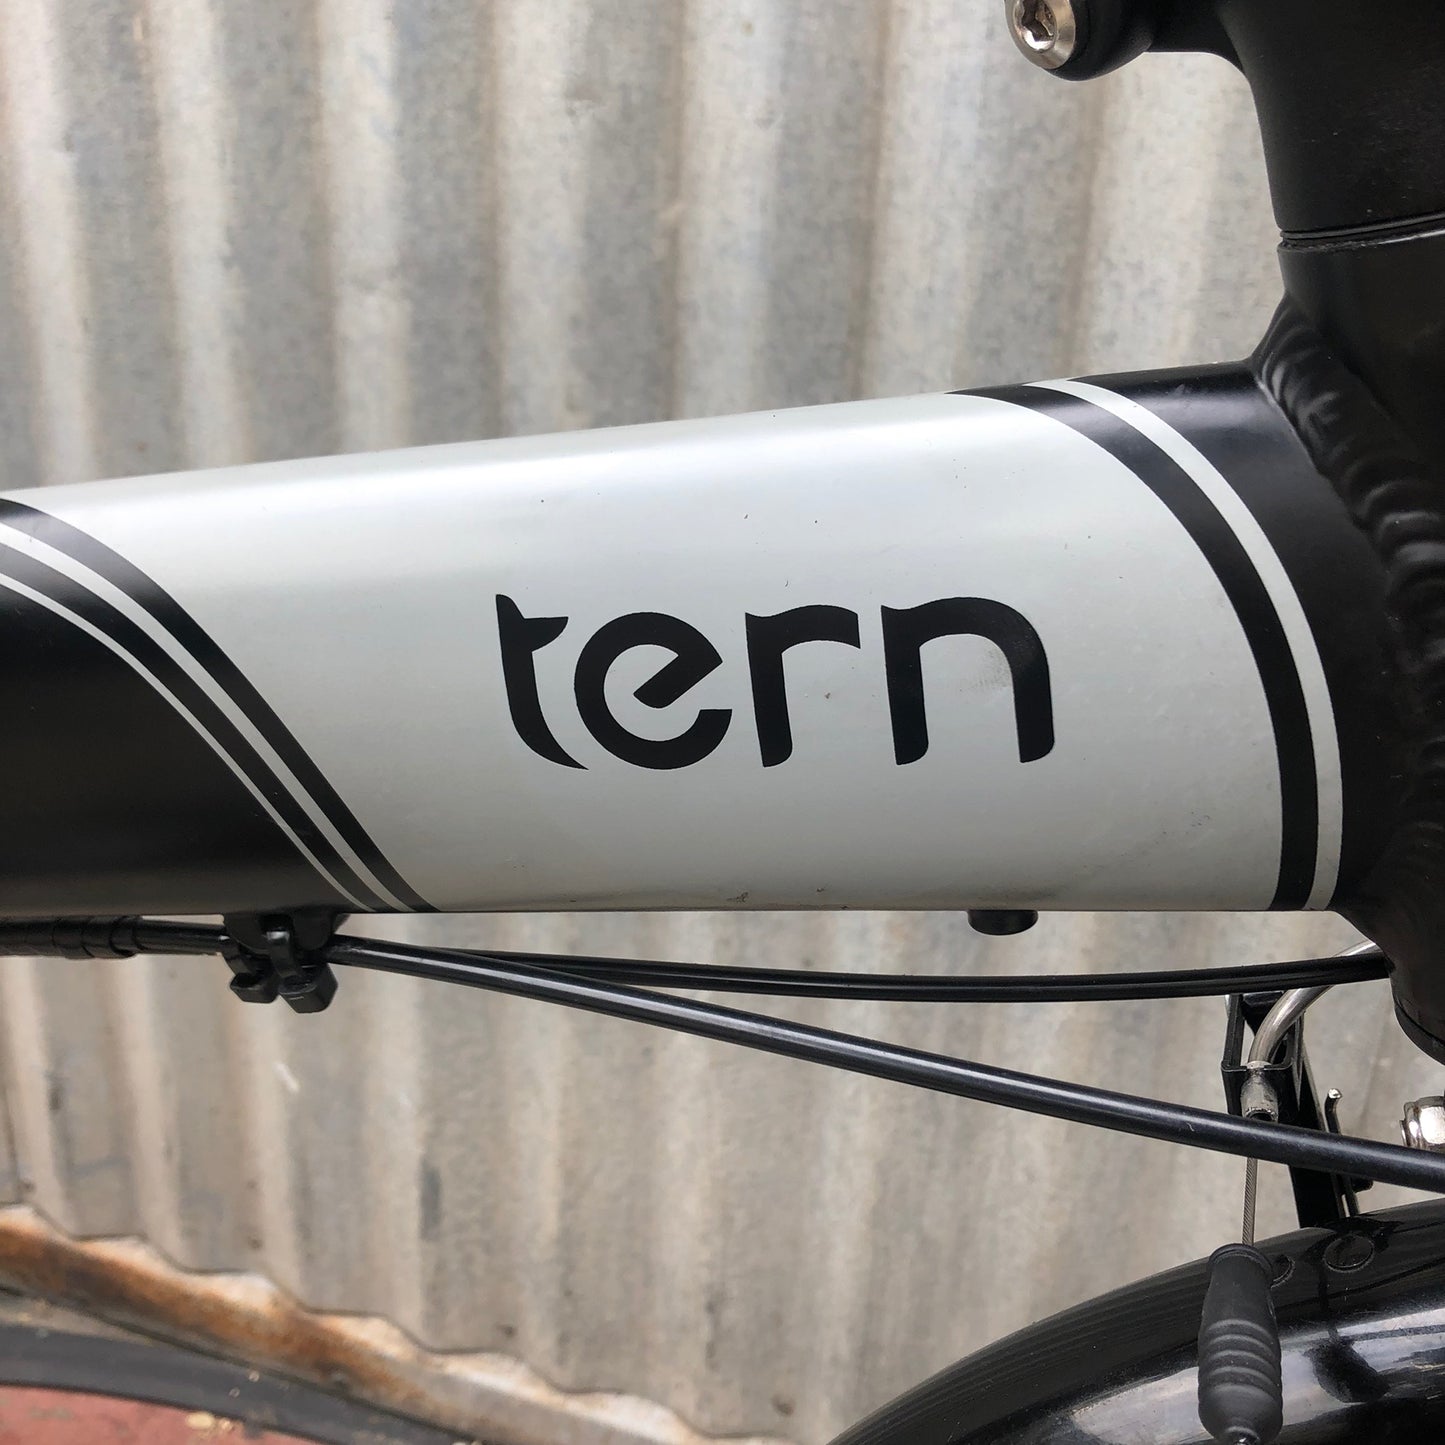 Used Tern 7Di - High End 8-speed Internal Hub Nexus Folding Bicycle - Used Folding Bike